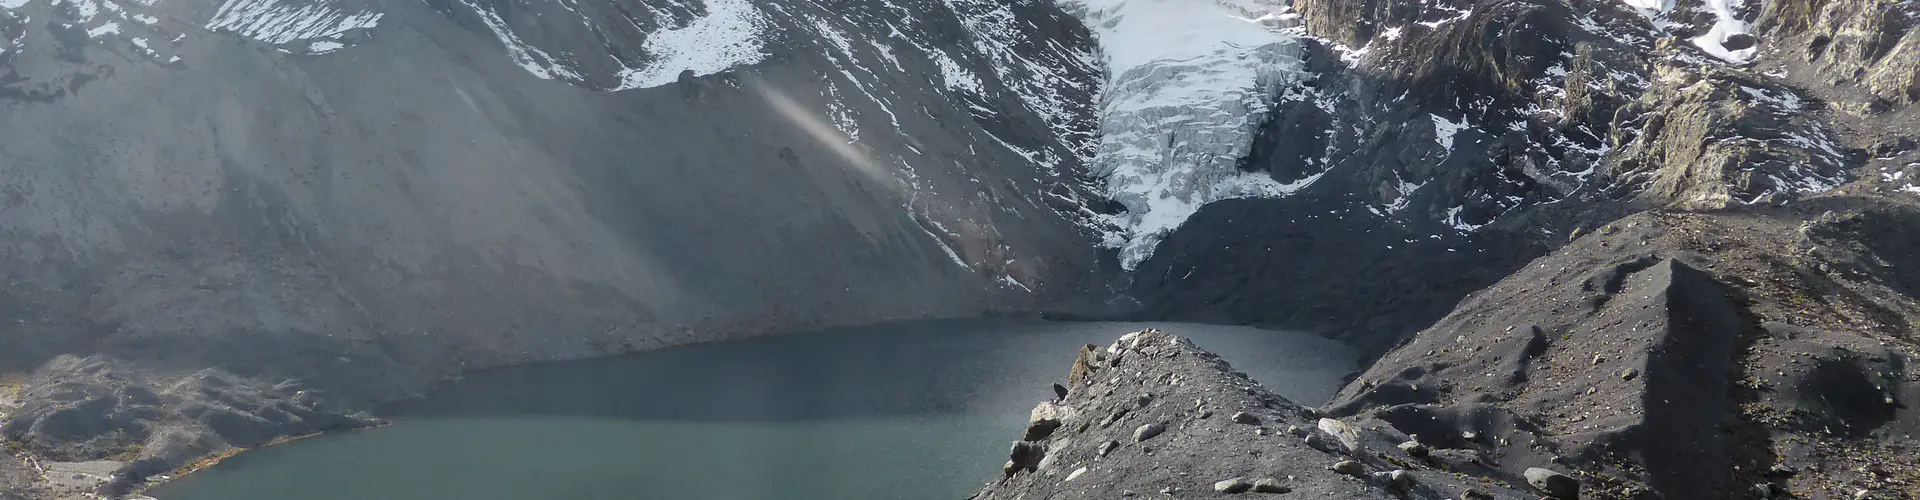 Glacier and glacier lake in the Bolivian Andes (Credit: Simon Cook)